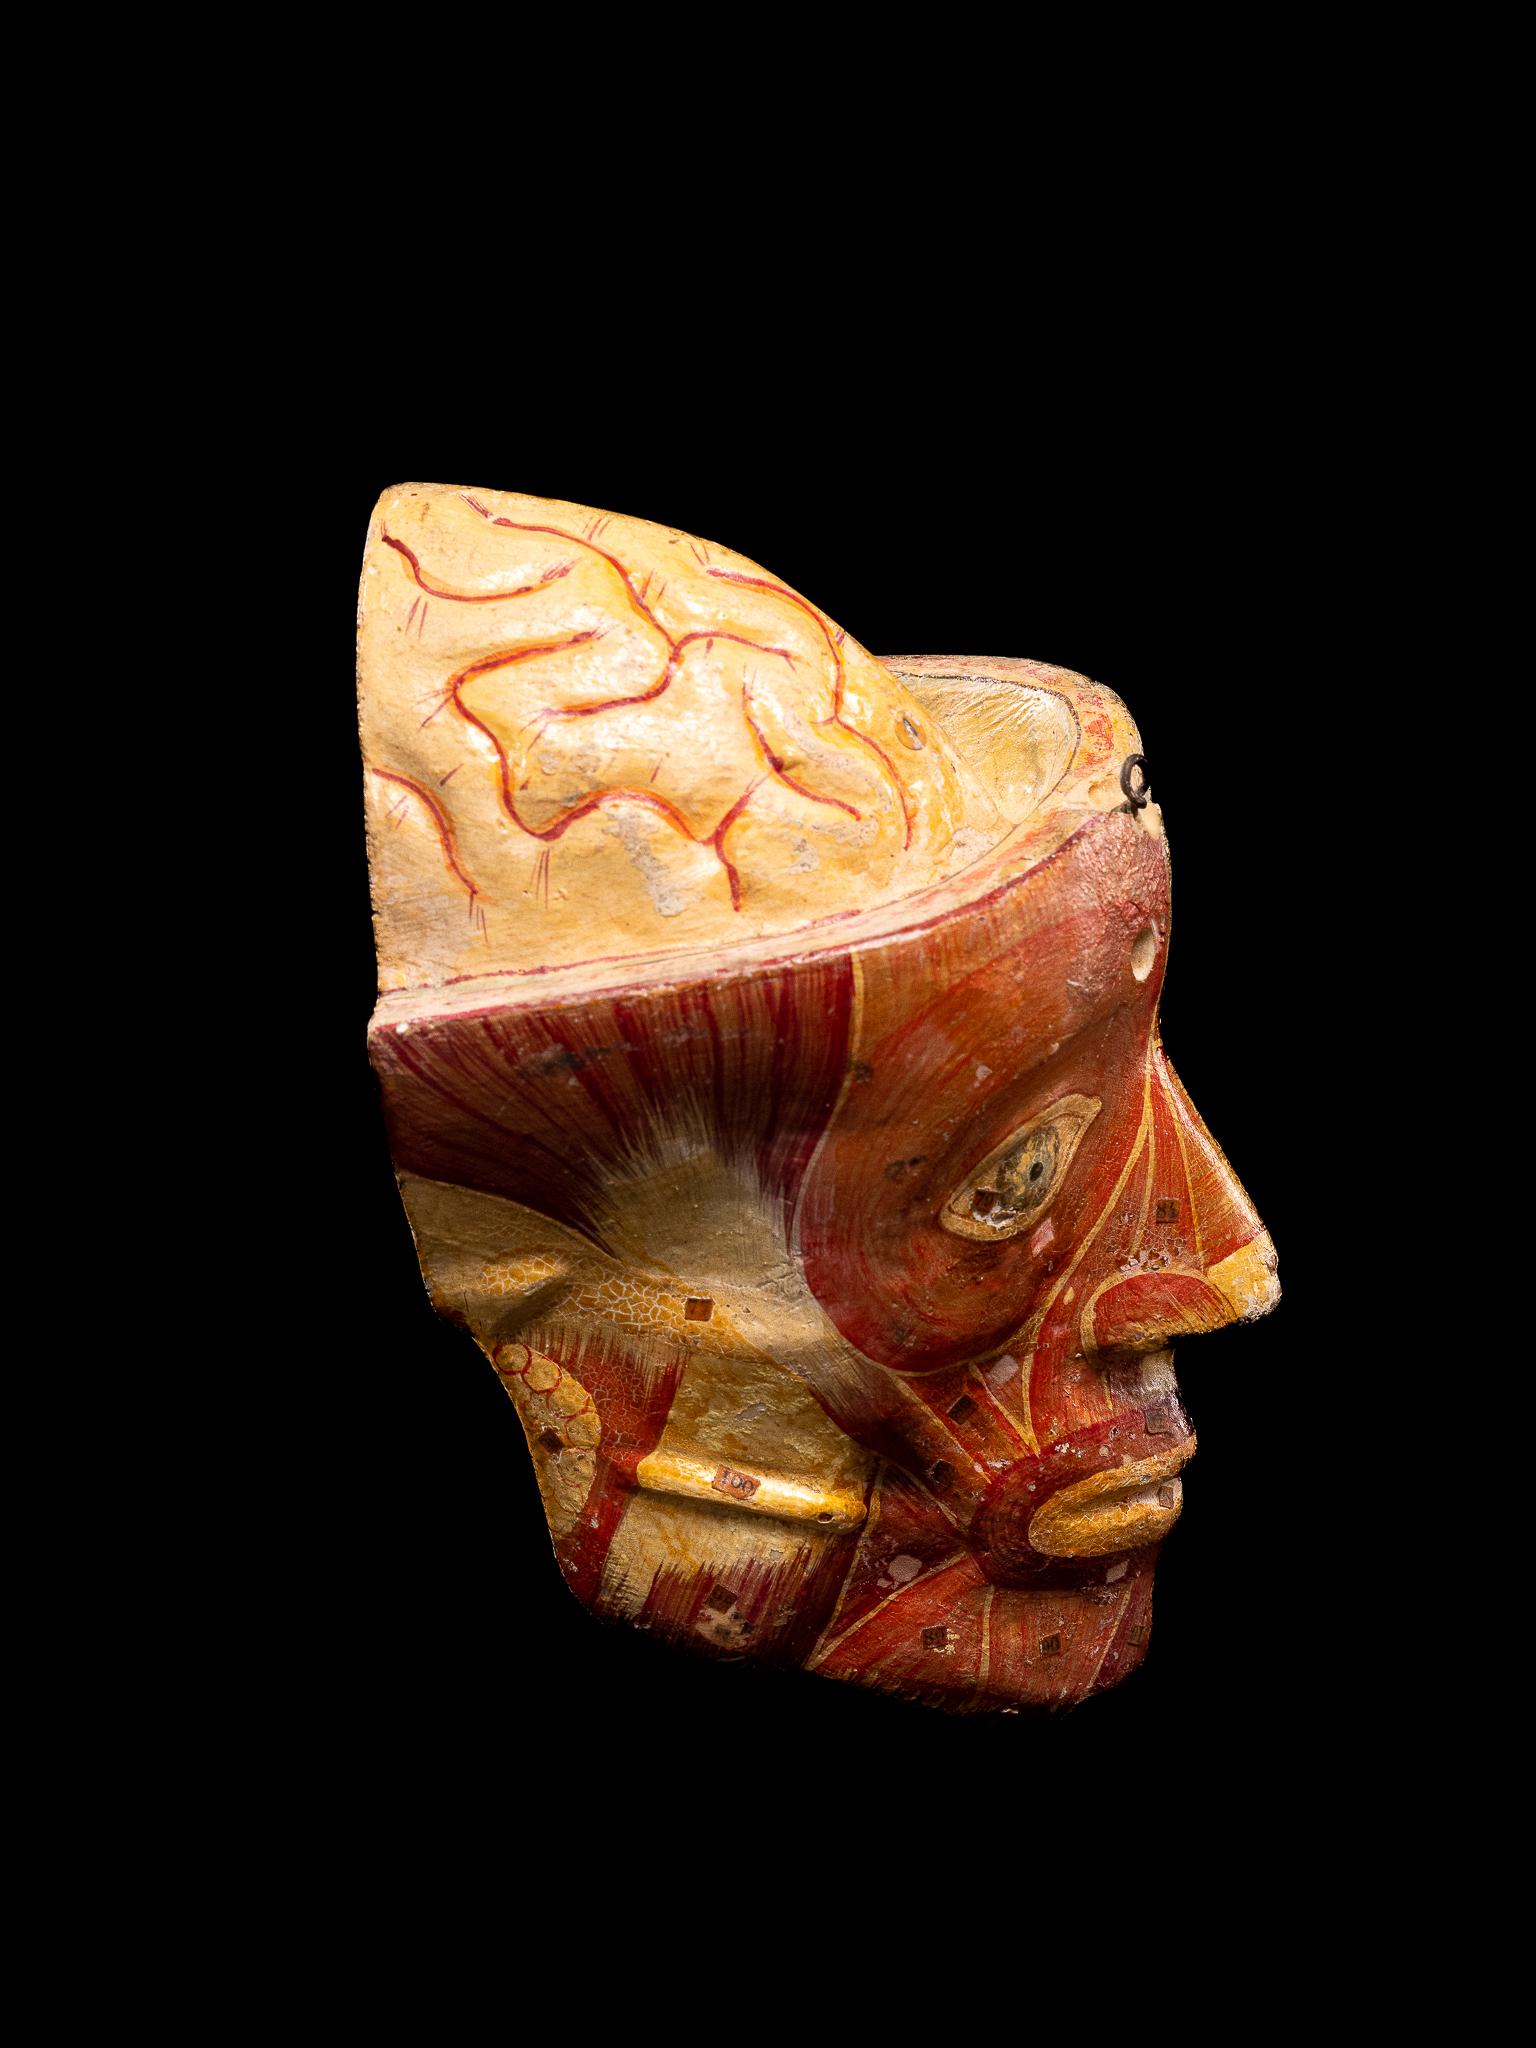 Coupe anatomique d'un crâne humain composé en papier mâché peint naturel, avec étiquettes numérotées sur les différents éléments.